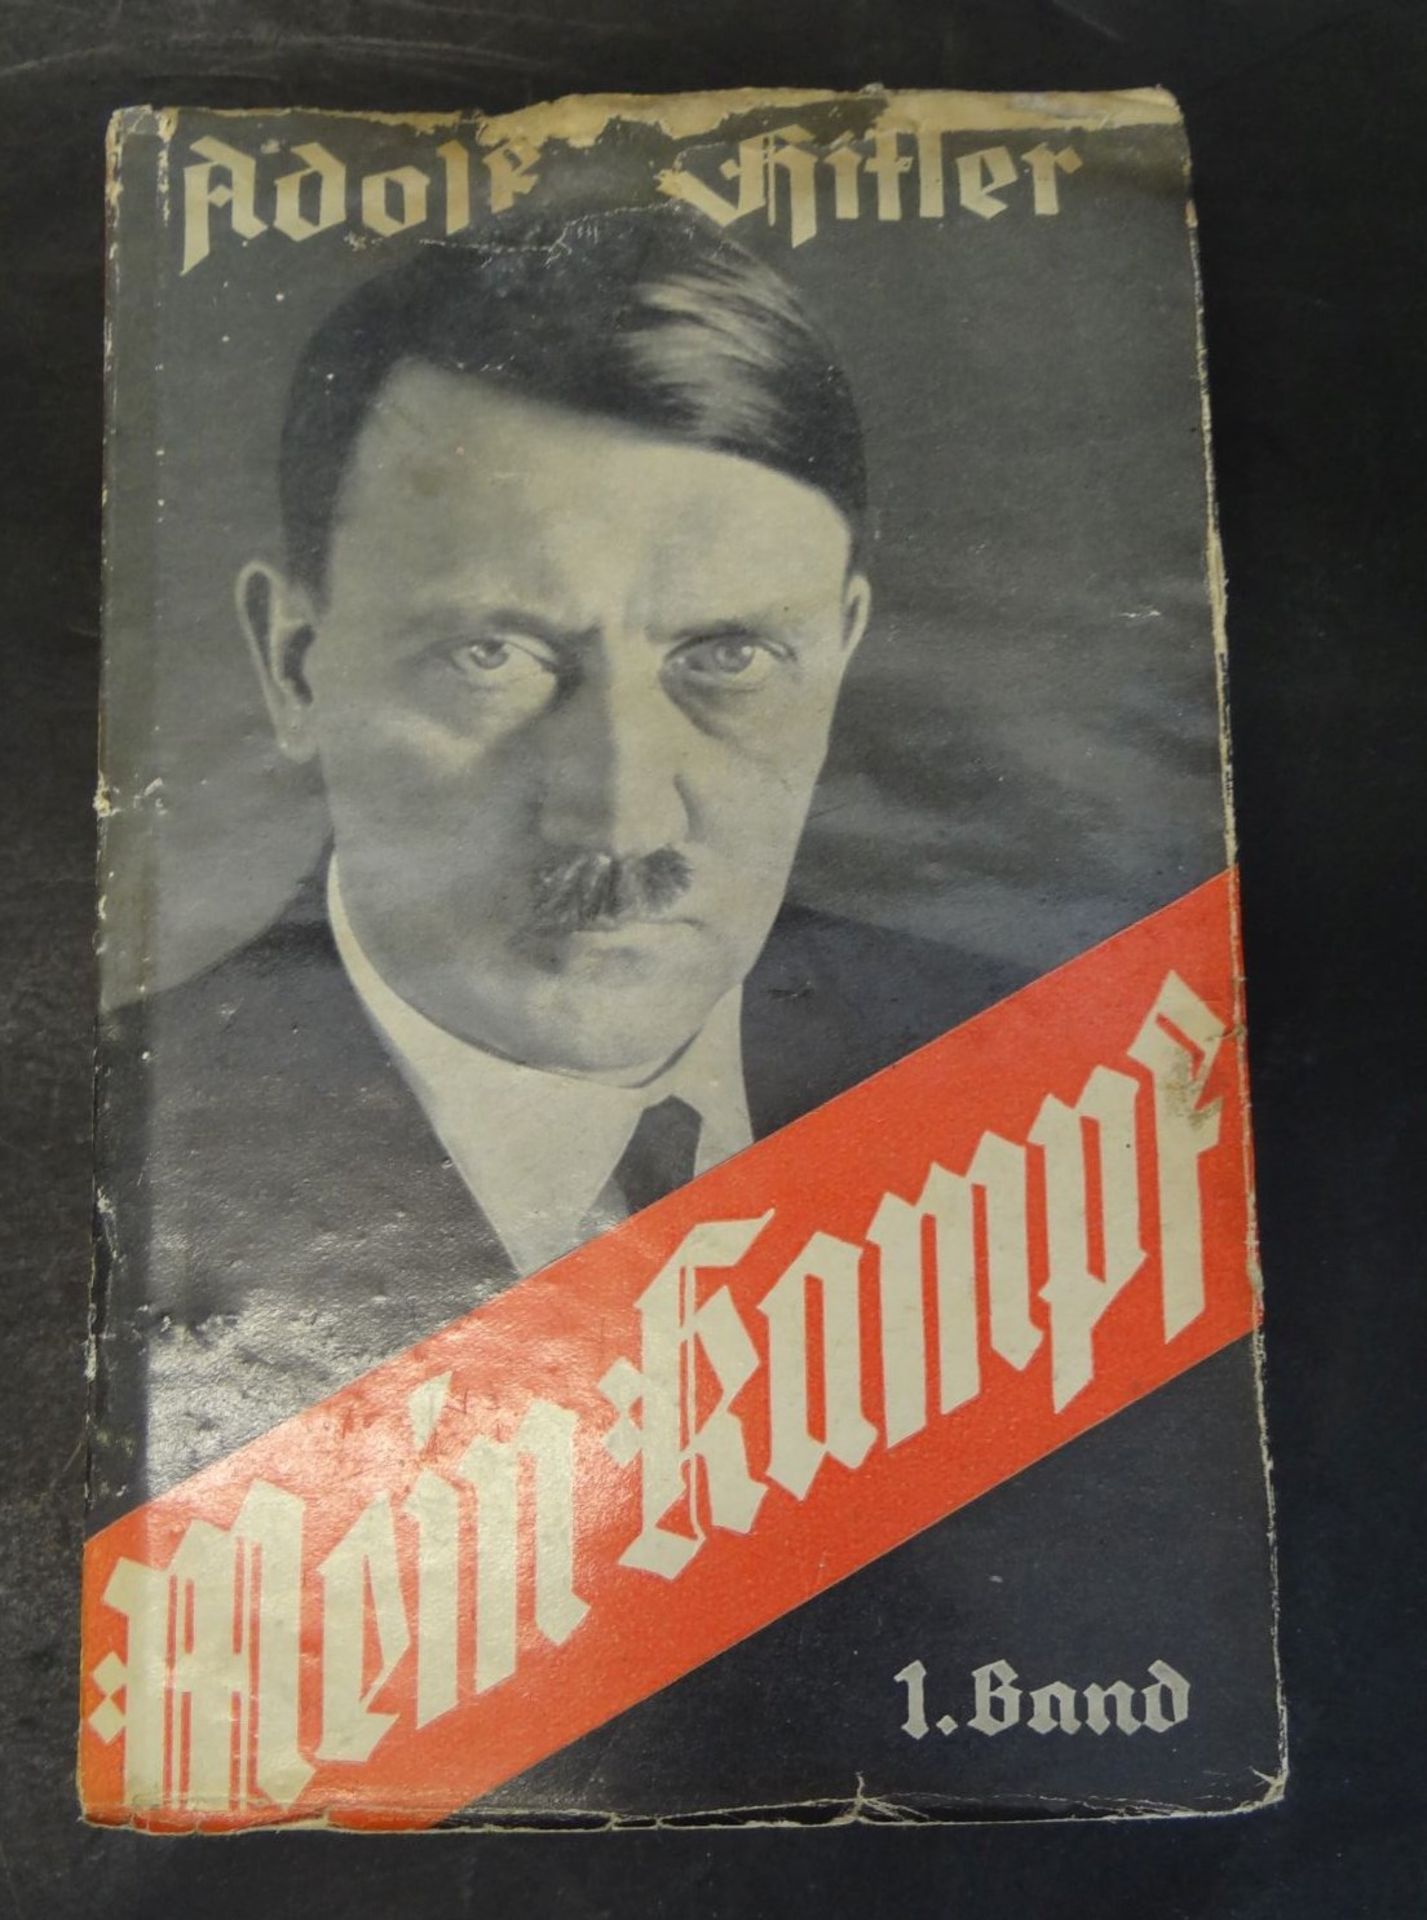 Adolf Hitler "Mein Kampf" 1.Band, 1933, wasserfleckig und fast durchgehend gewellt, Einband lose,